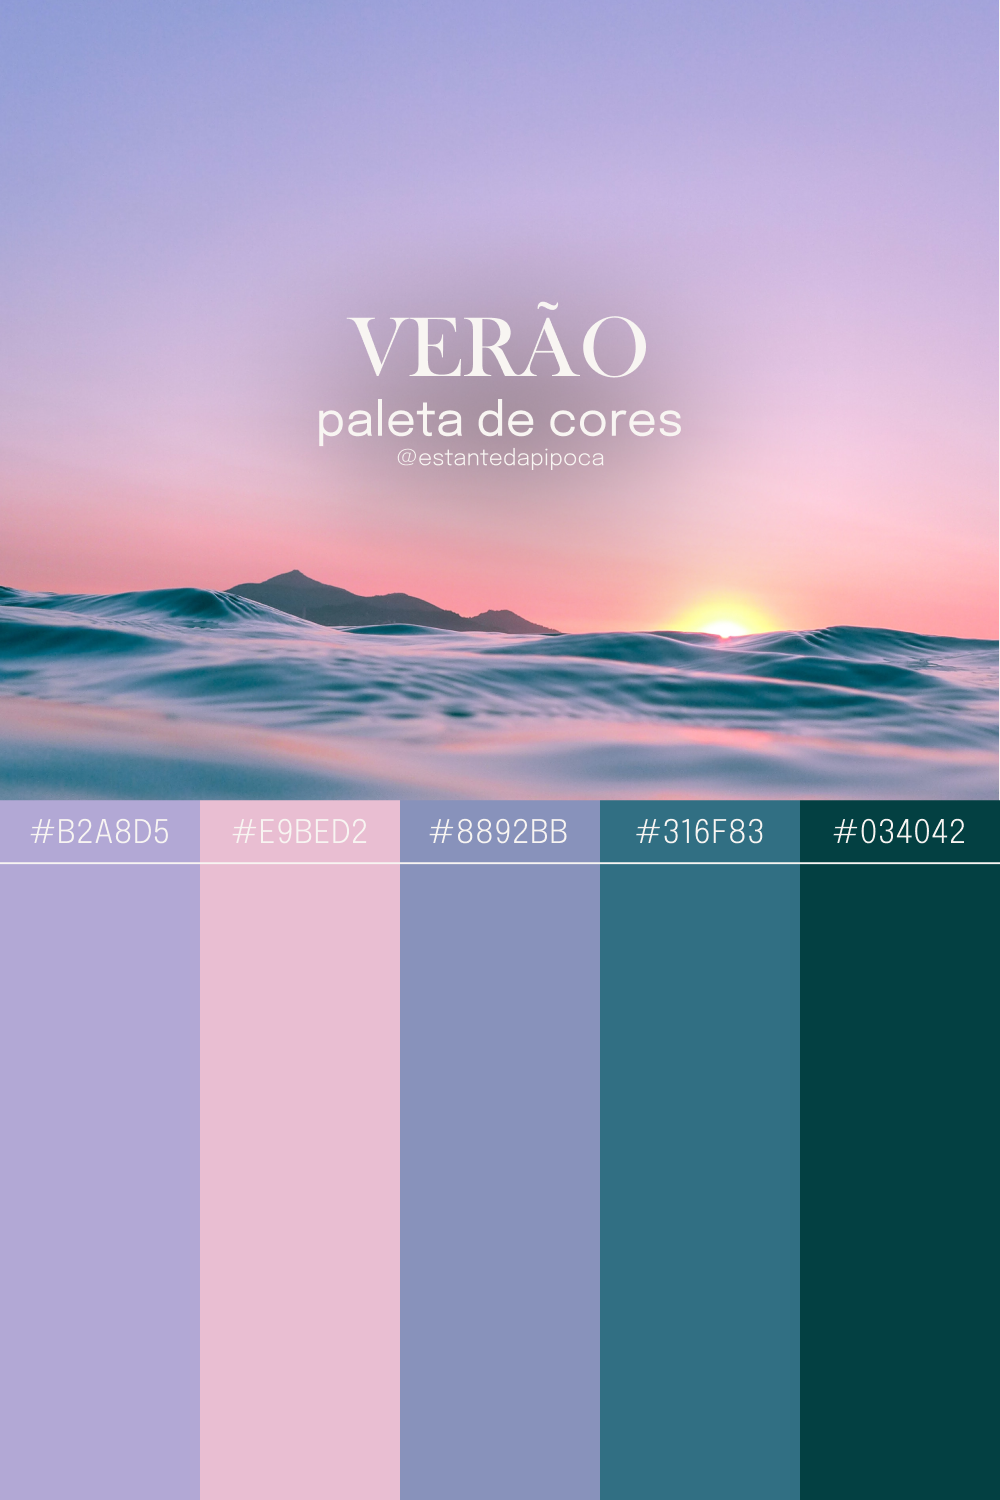 Paleta de 5 cores, inspirada no verão. O código das cores está logo abaixo.